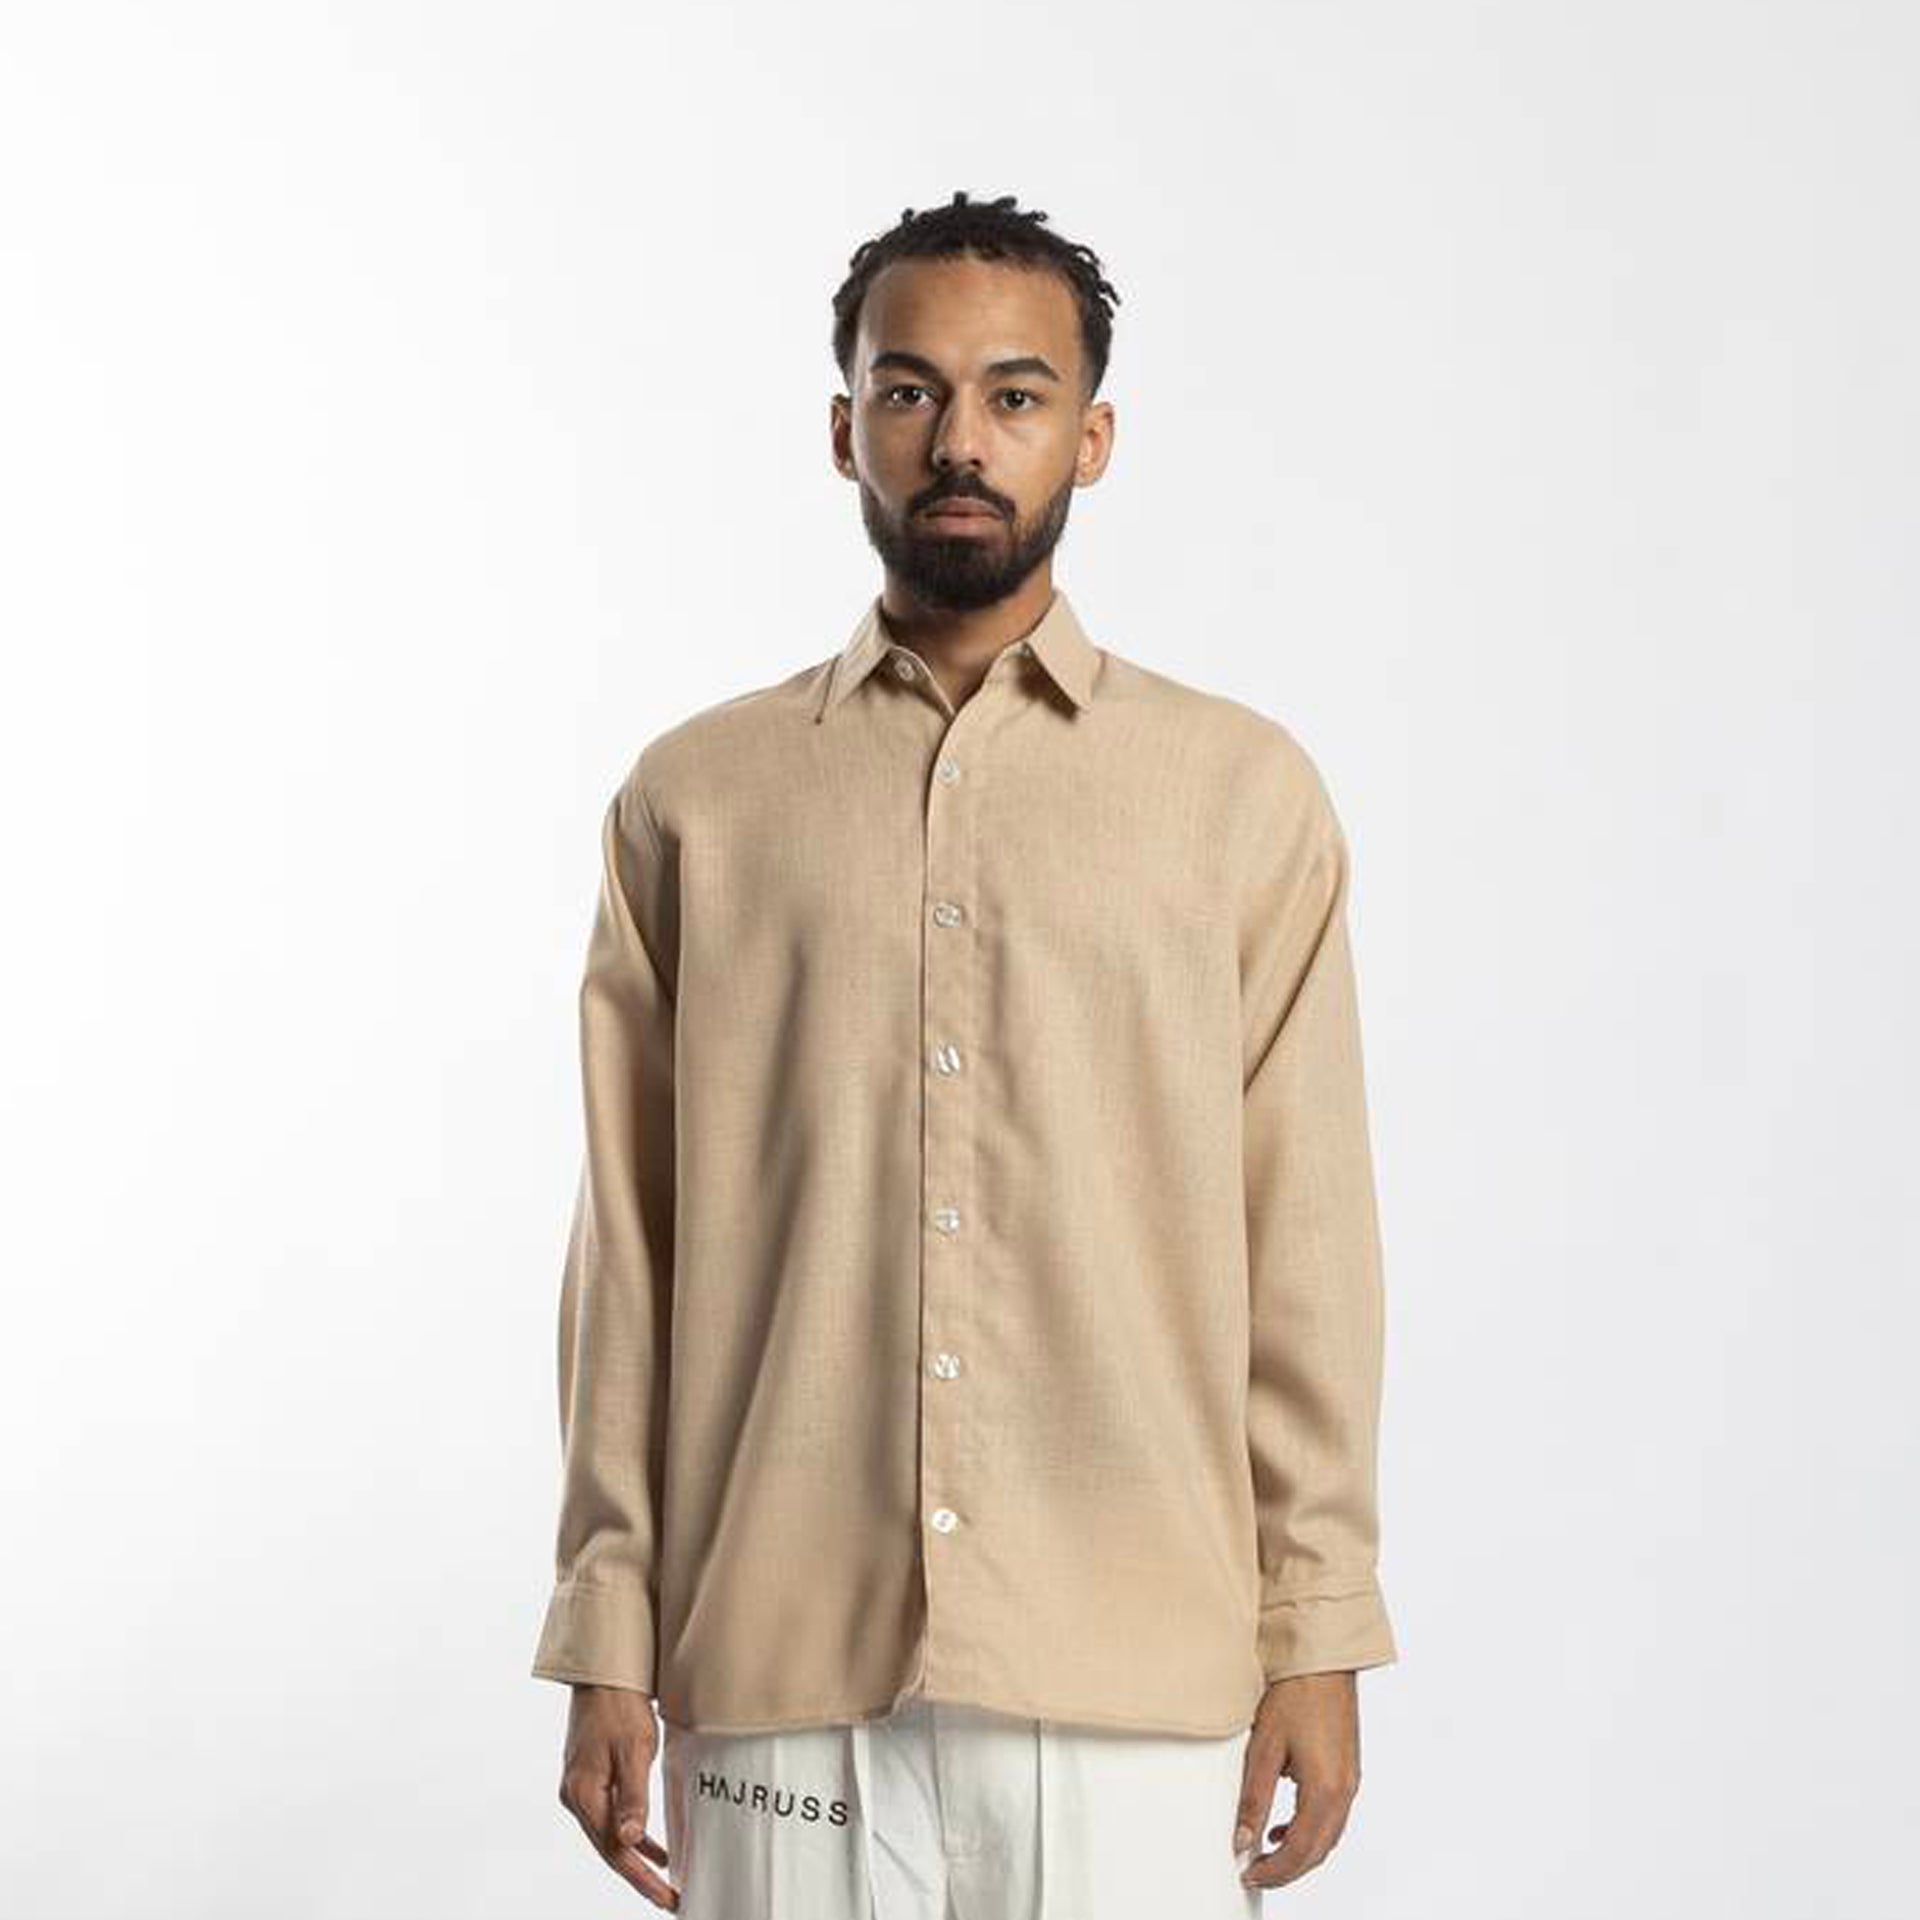 Beige Linen Long-Sleeve Shirt From Hajrus